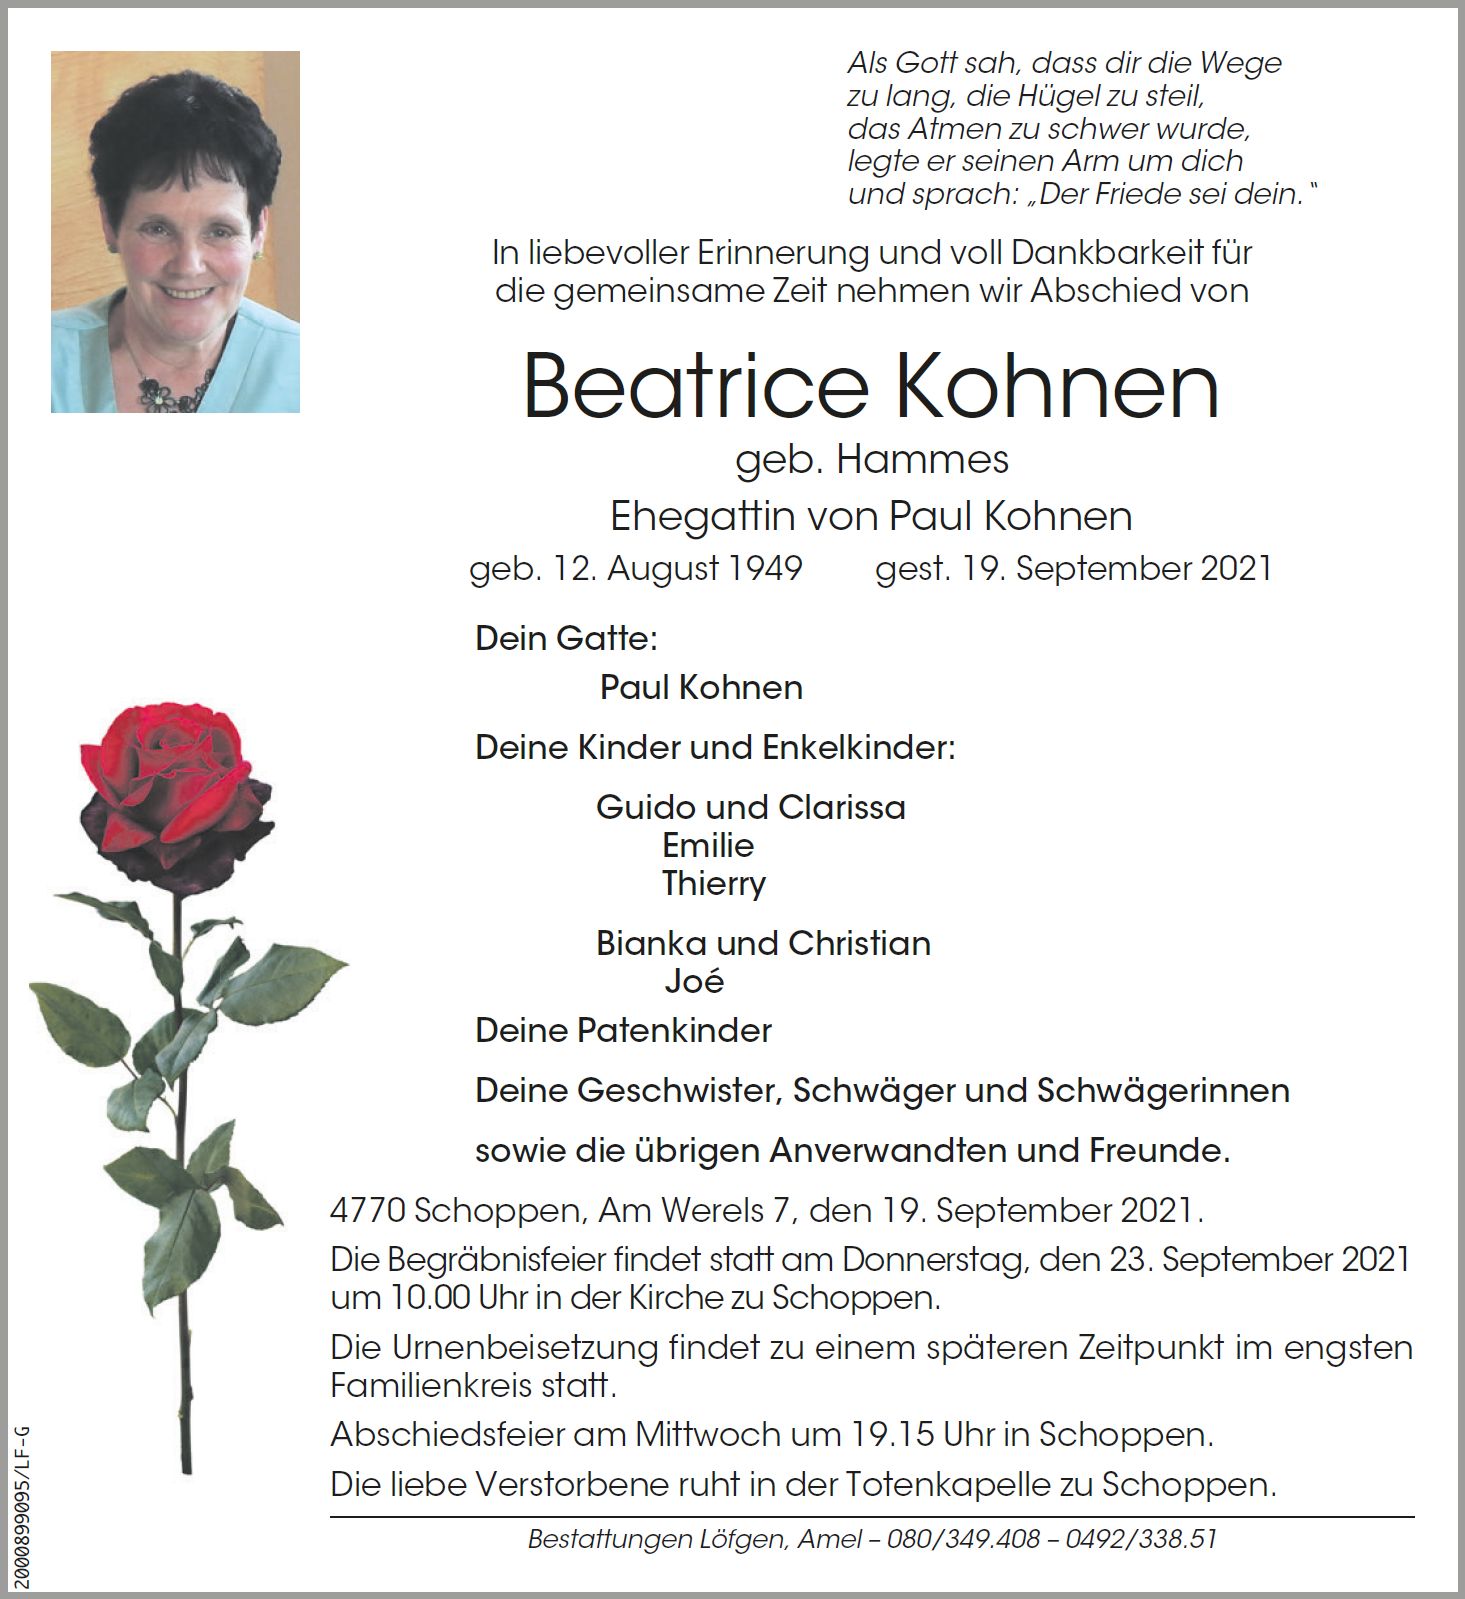 Beatrice Kohnen